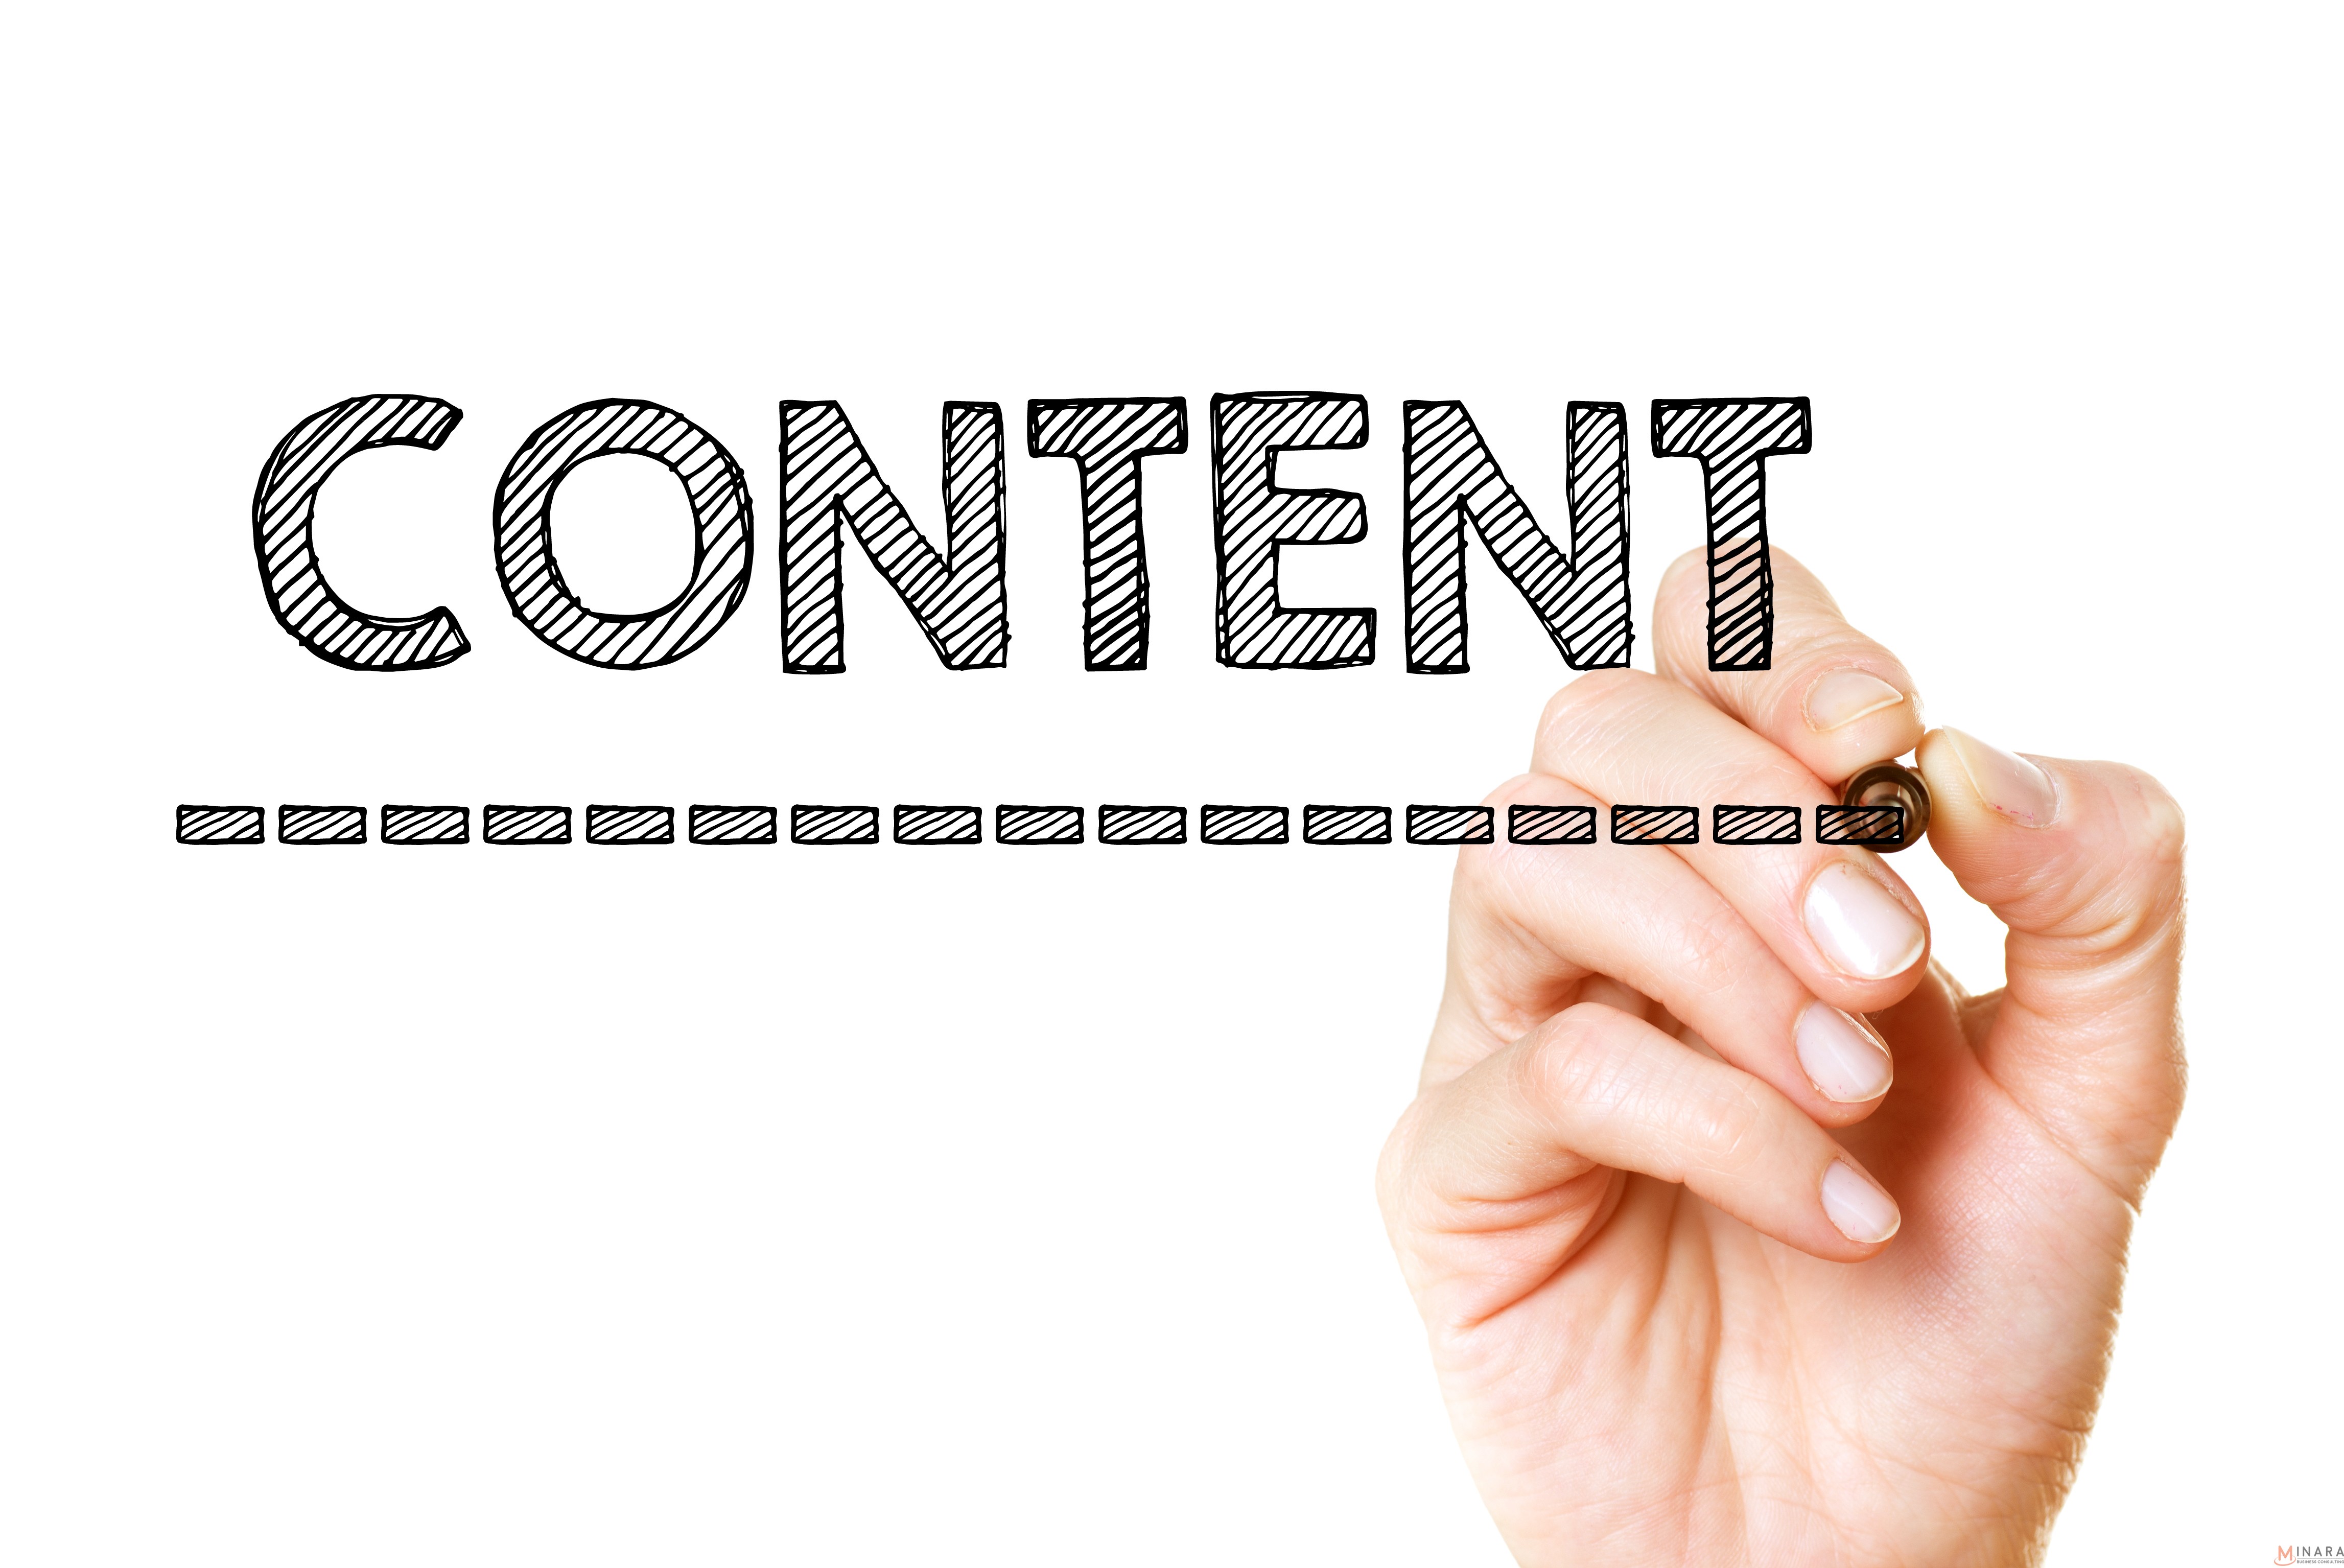 Xu hướng content marketing bất động sản với dạng bài kiểu “How to”